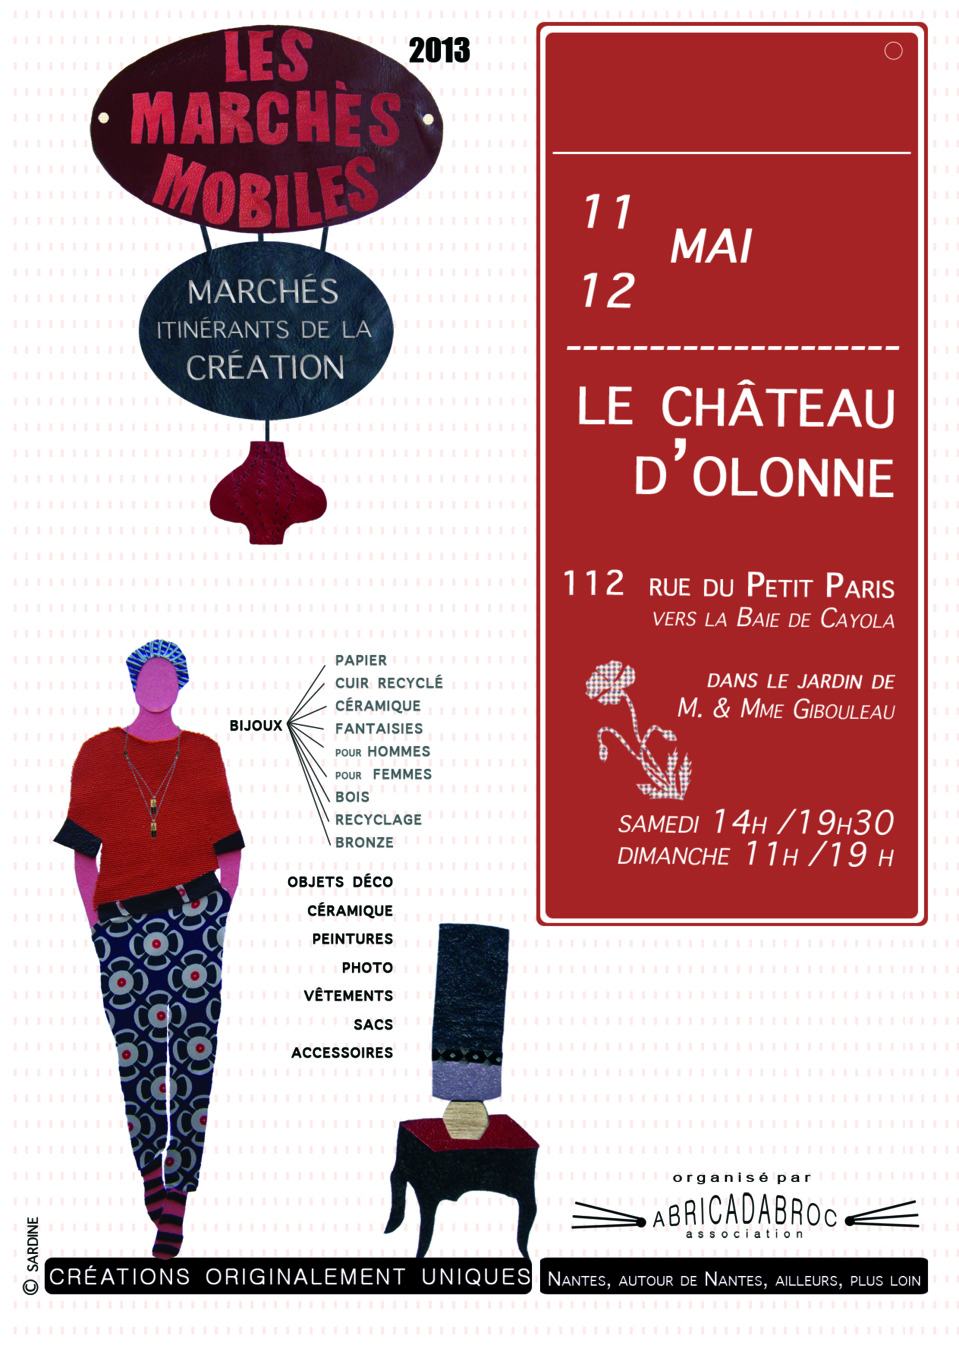 Les Marchés Mobiles : marchés itinérants de la création, de retour au Château d'Olonne les 11 et 12 mai